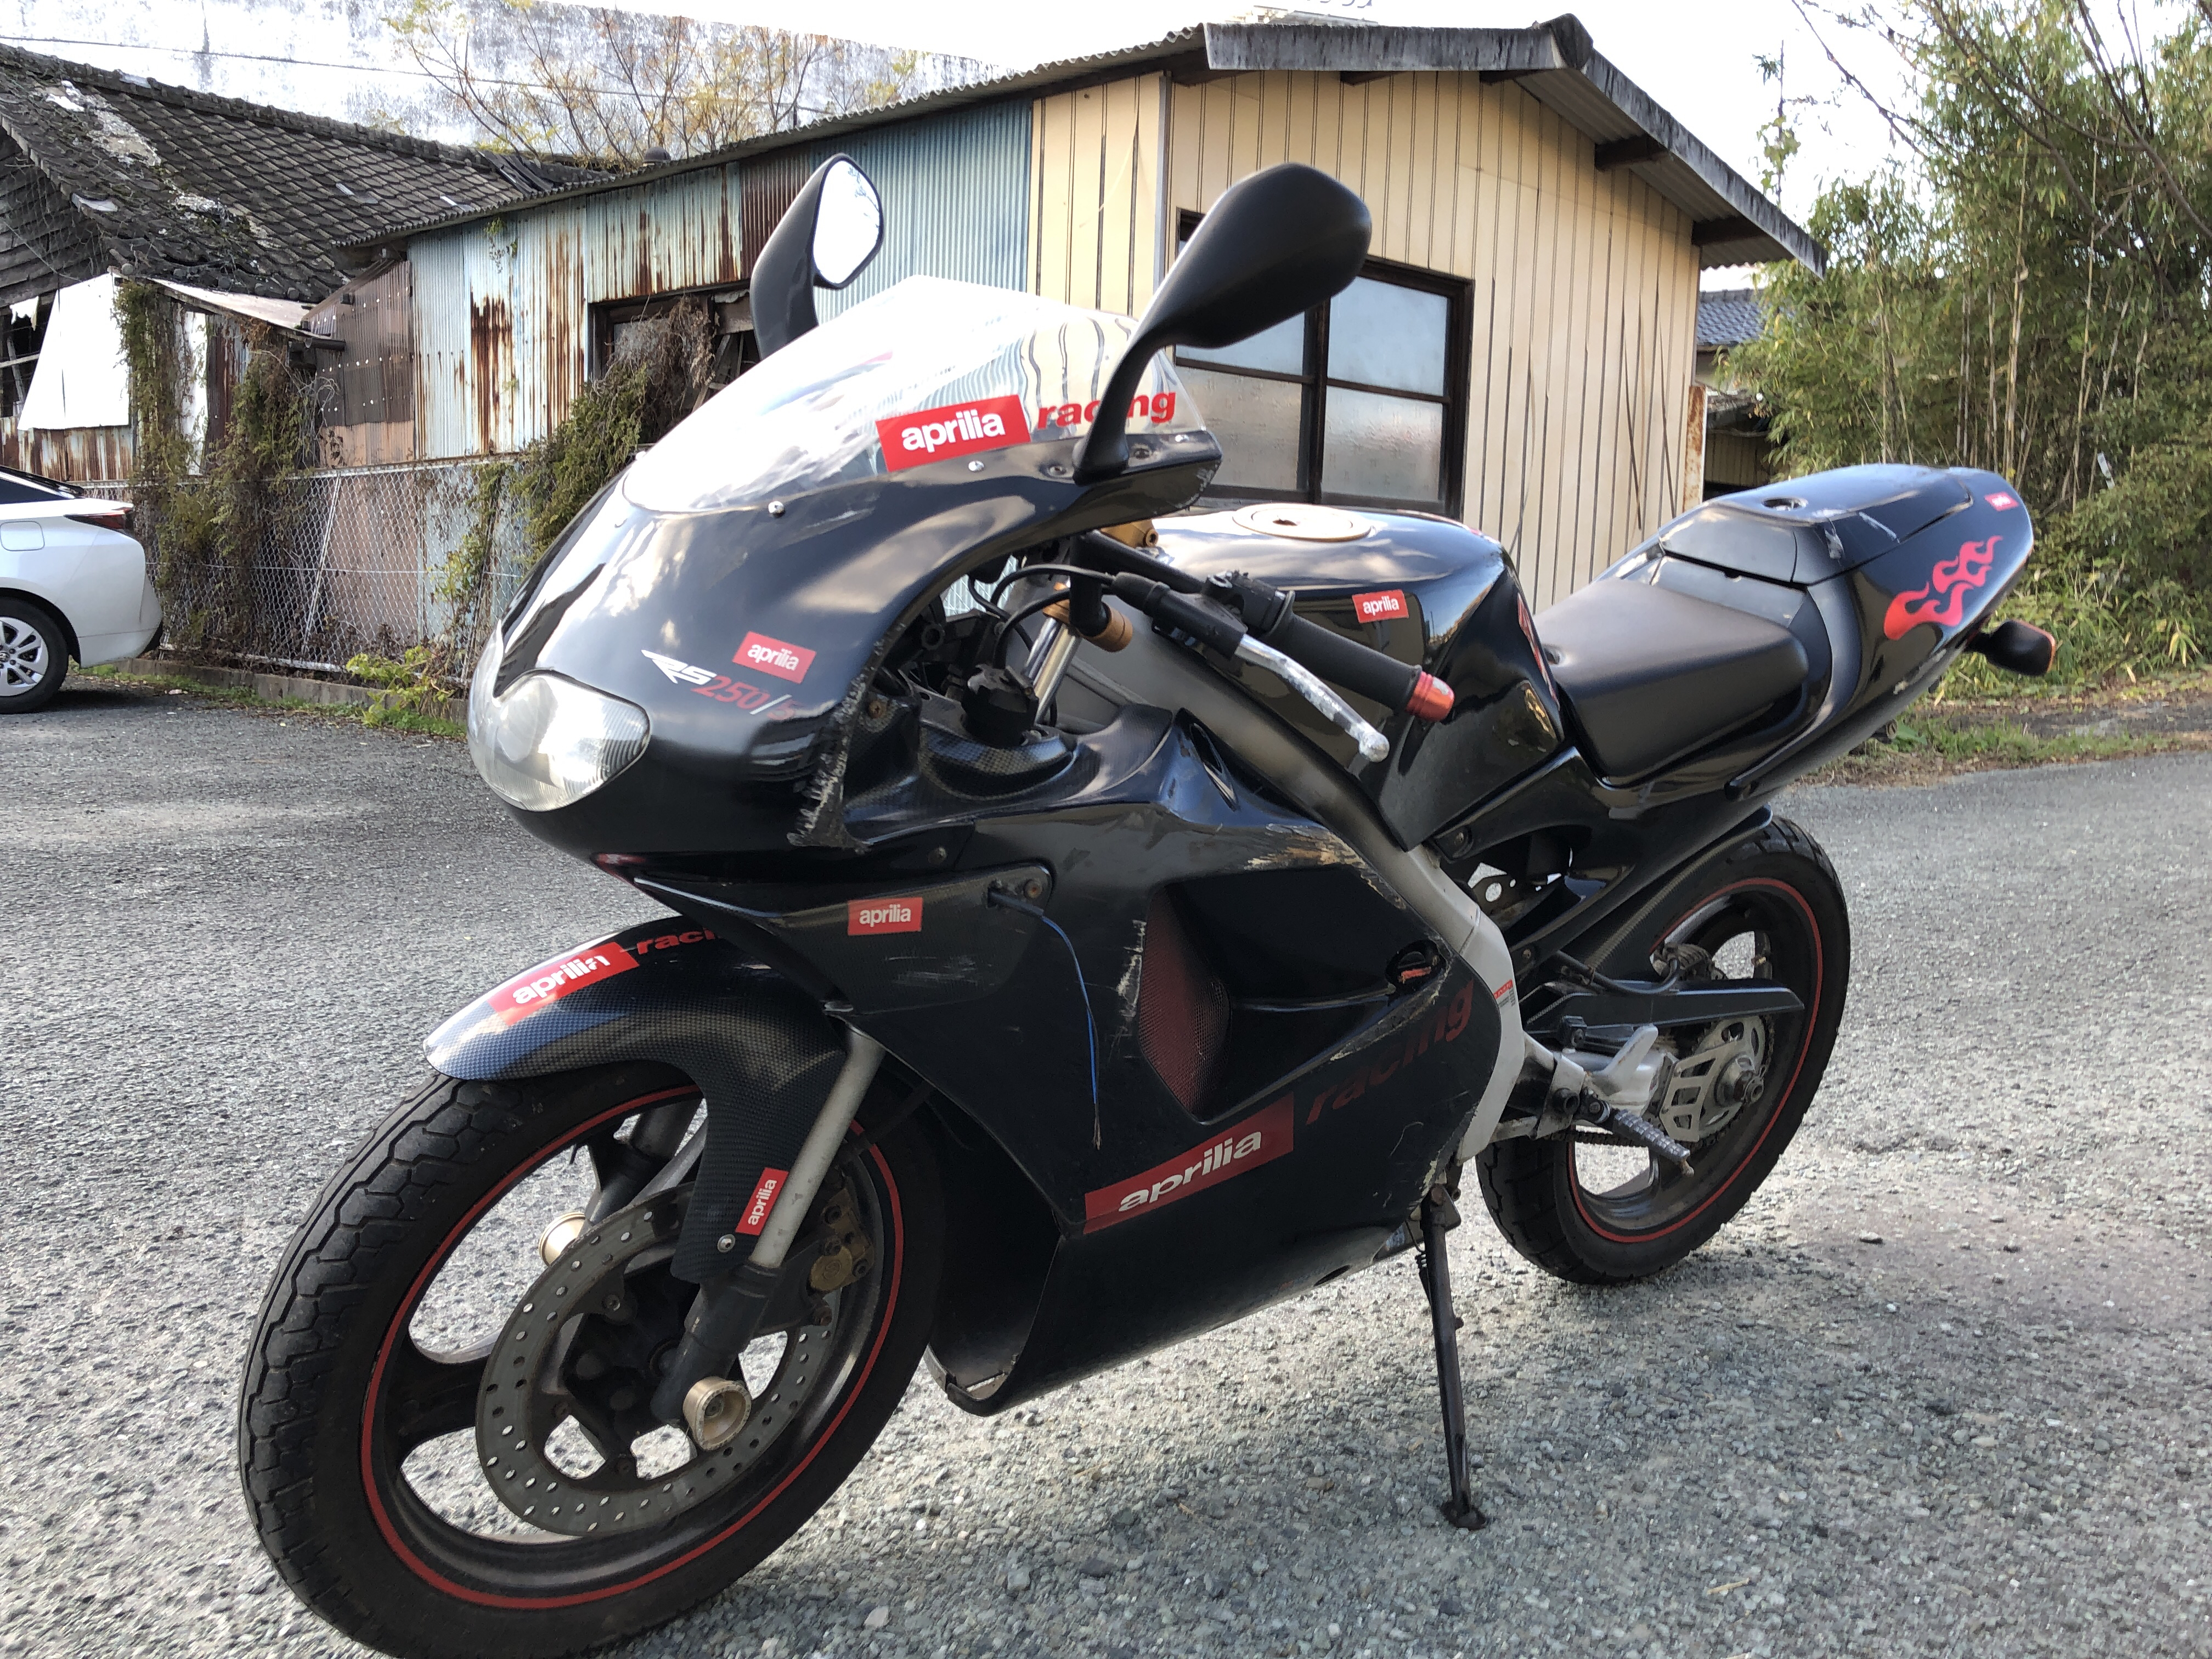 熊本県玉名市繁根木ａ様 原付50ccオートバイ アプリリアrs 事故車 熊本のバイク スクーターの買取処分 良質バイク高価買取も みのまるバイク